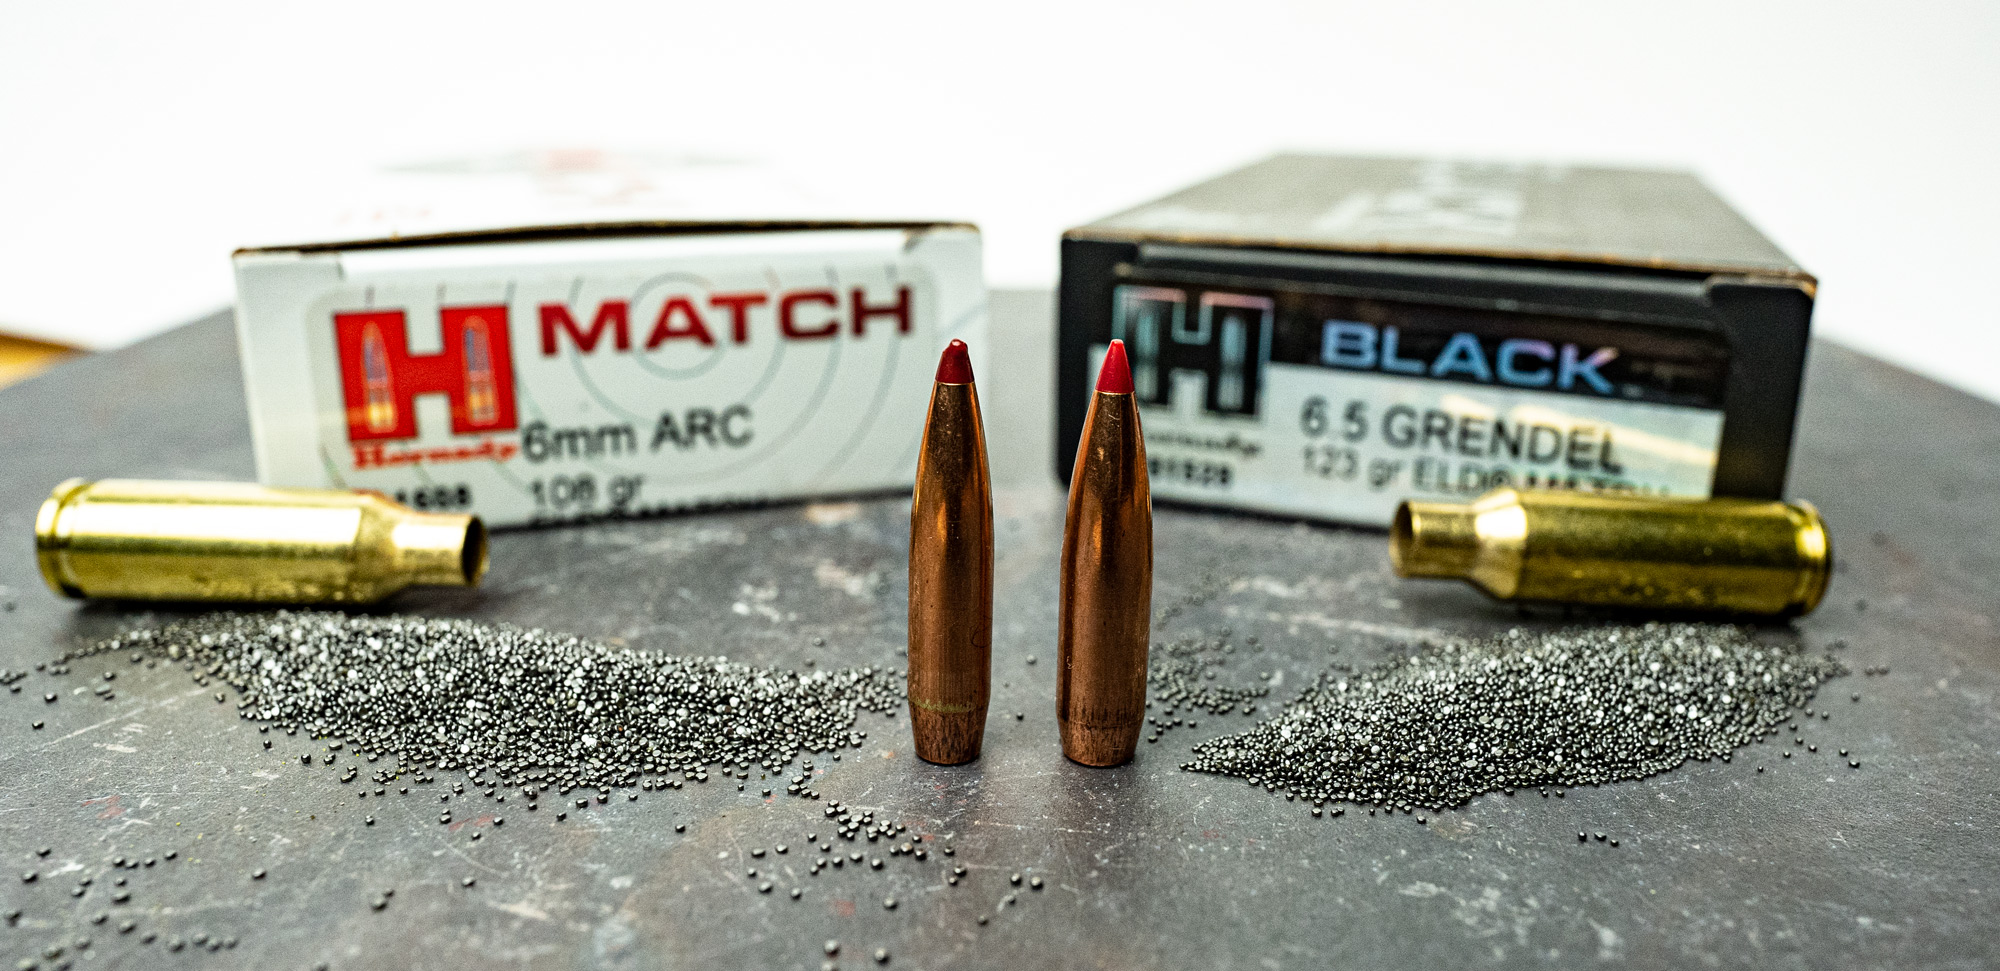 Bullet comparison side by side to show larger 6.5 Grendel bullet